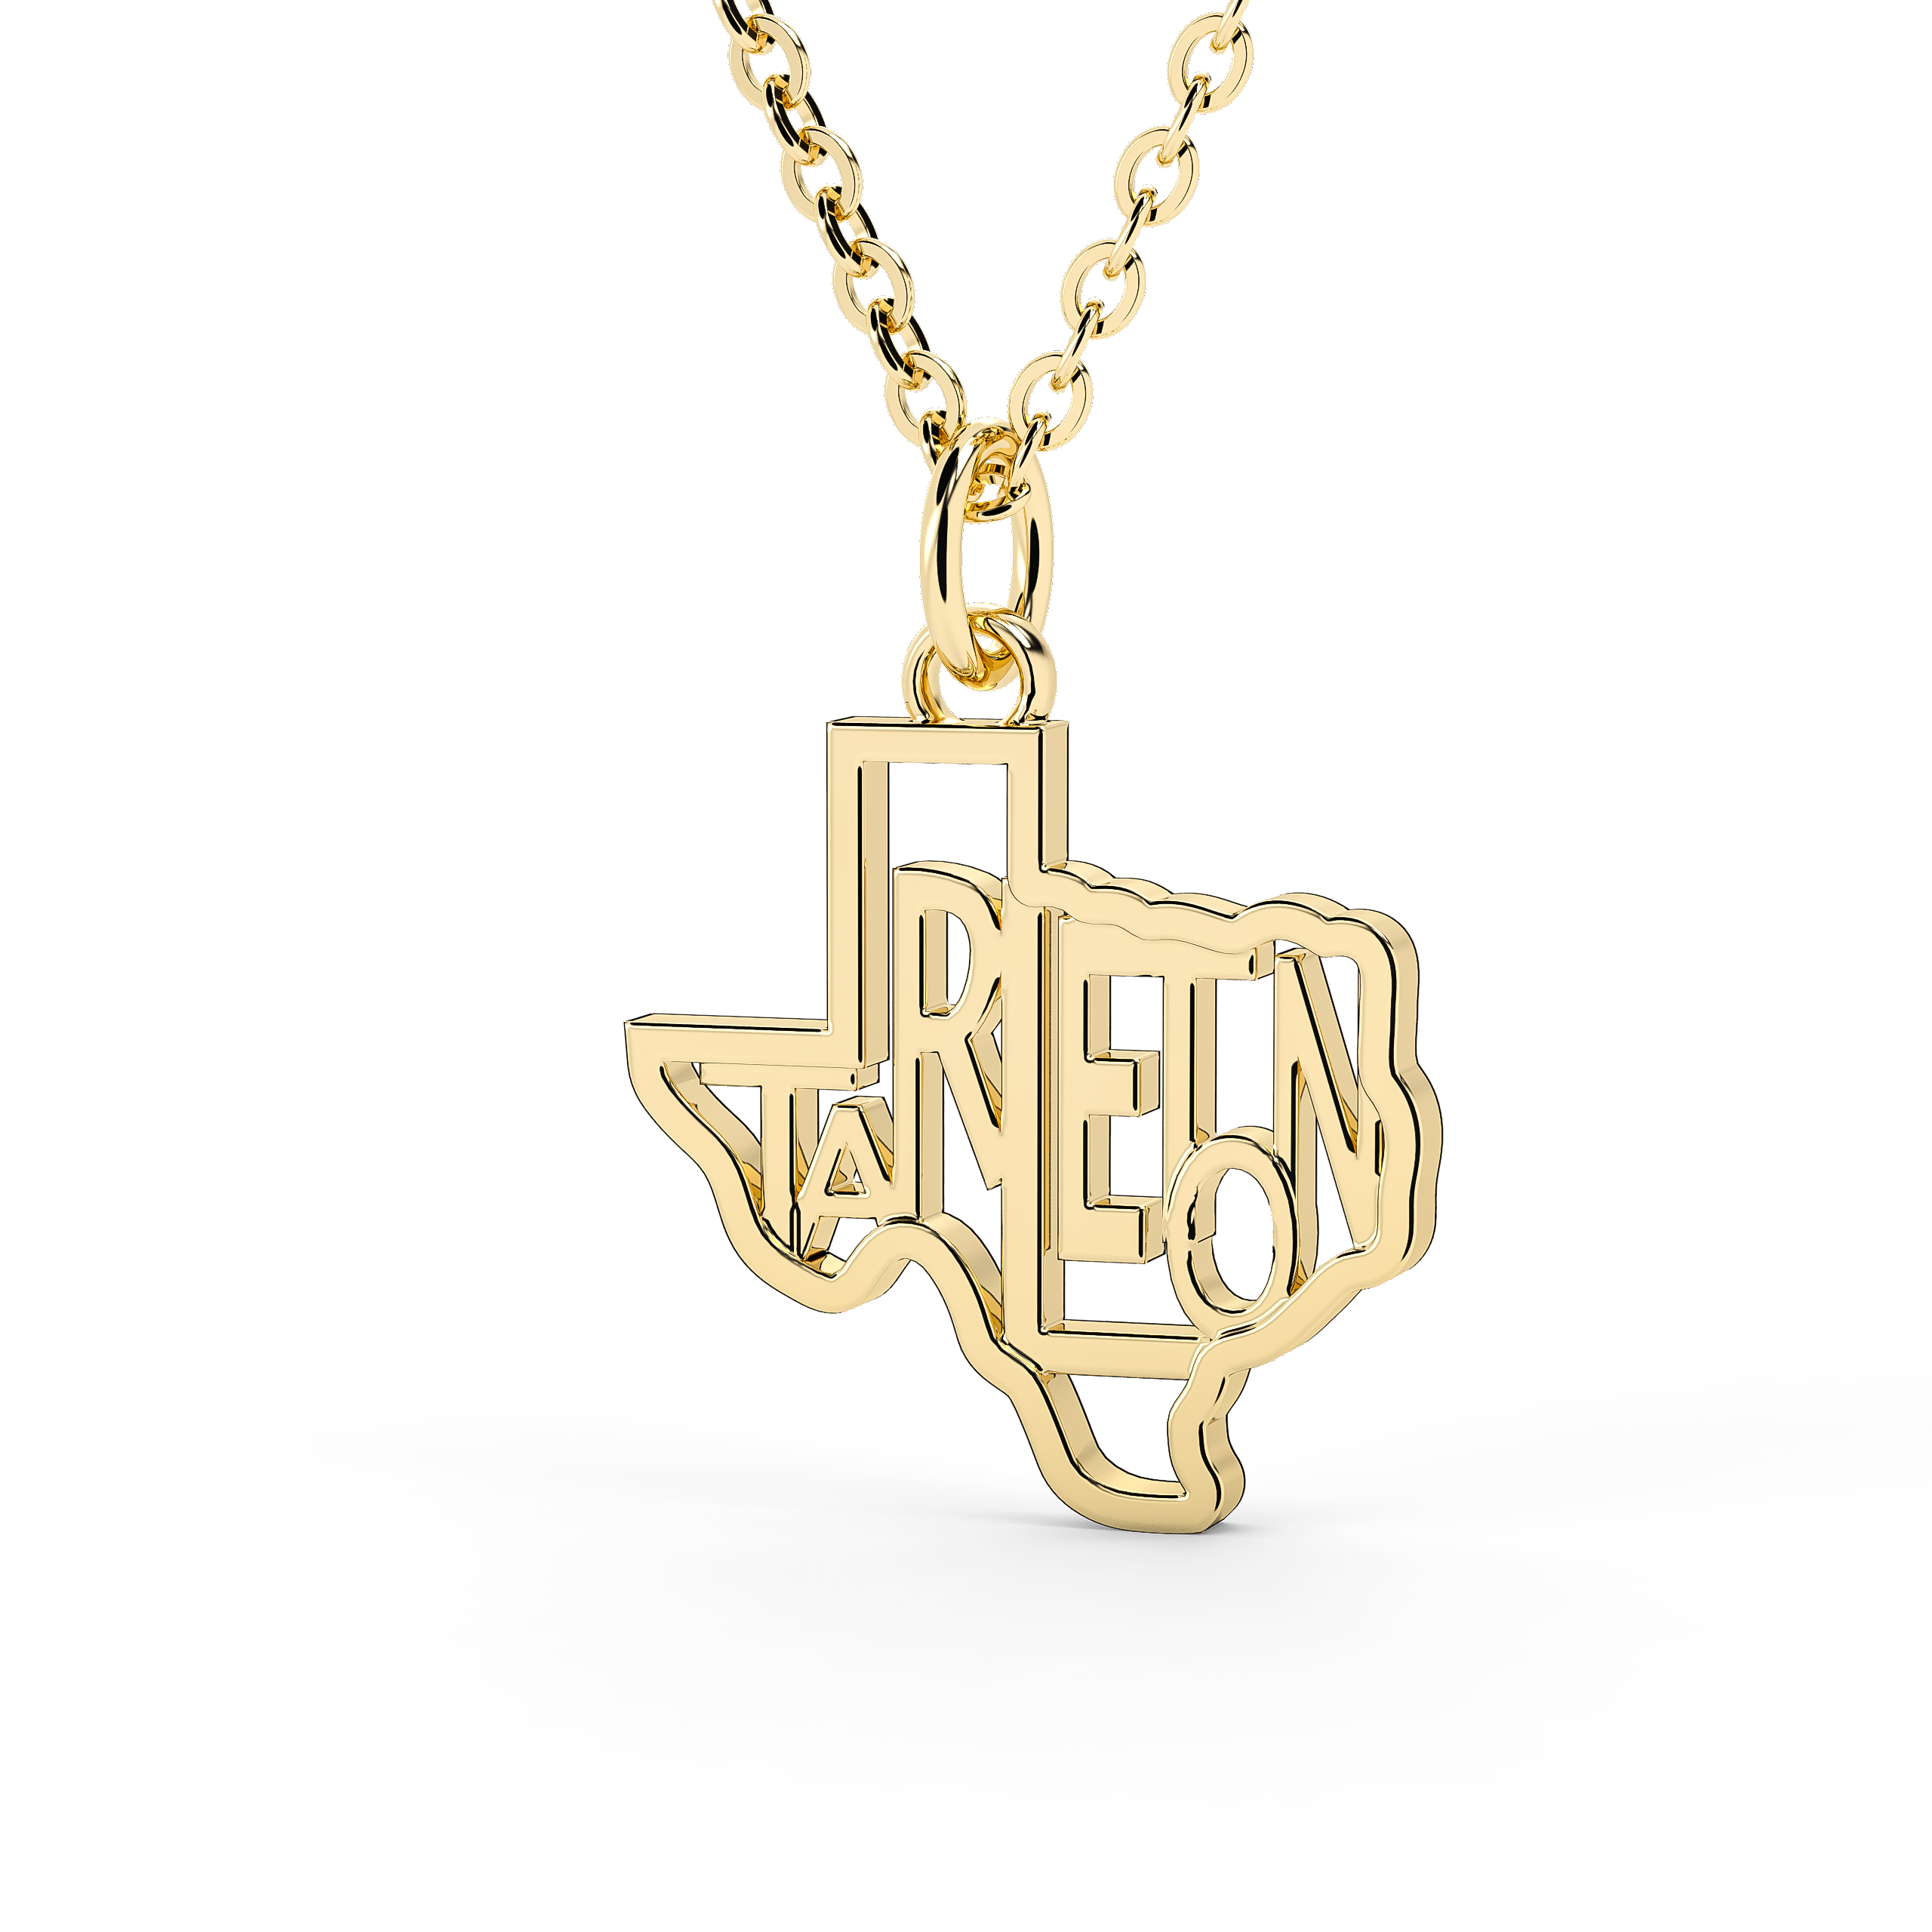 Gold Plated Sterling Silver Louisiana State University XL Pendant by  LogoArt - BillyTheTree Jewelry